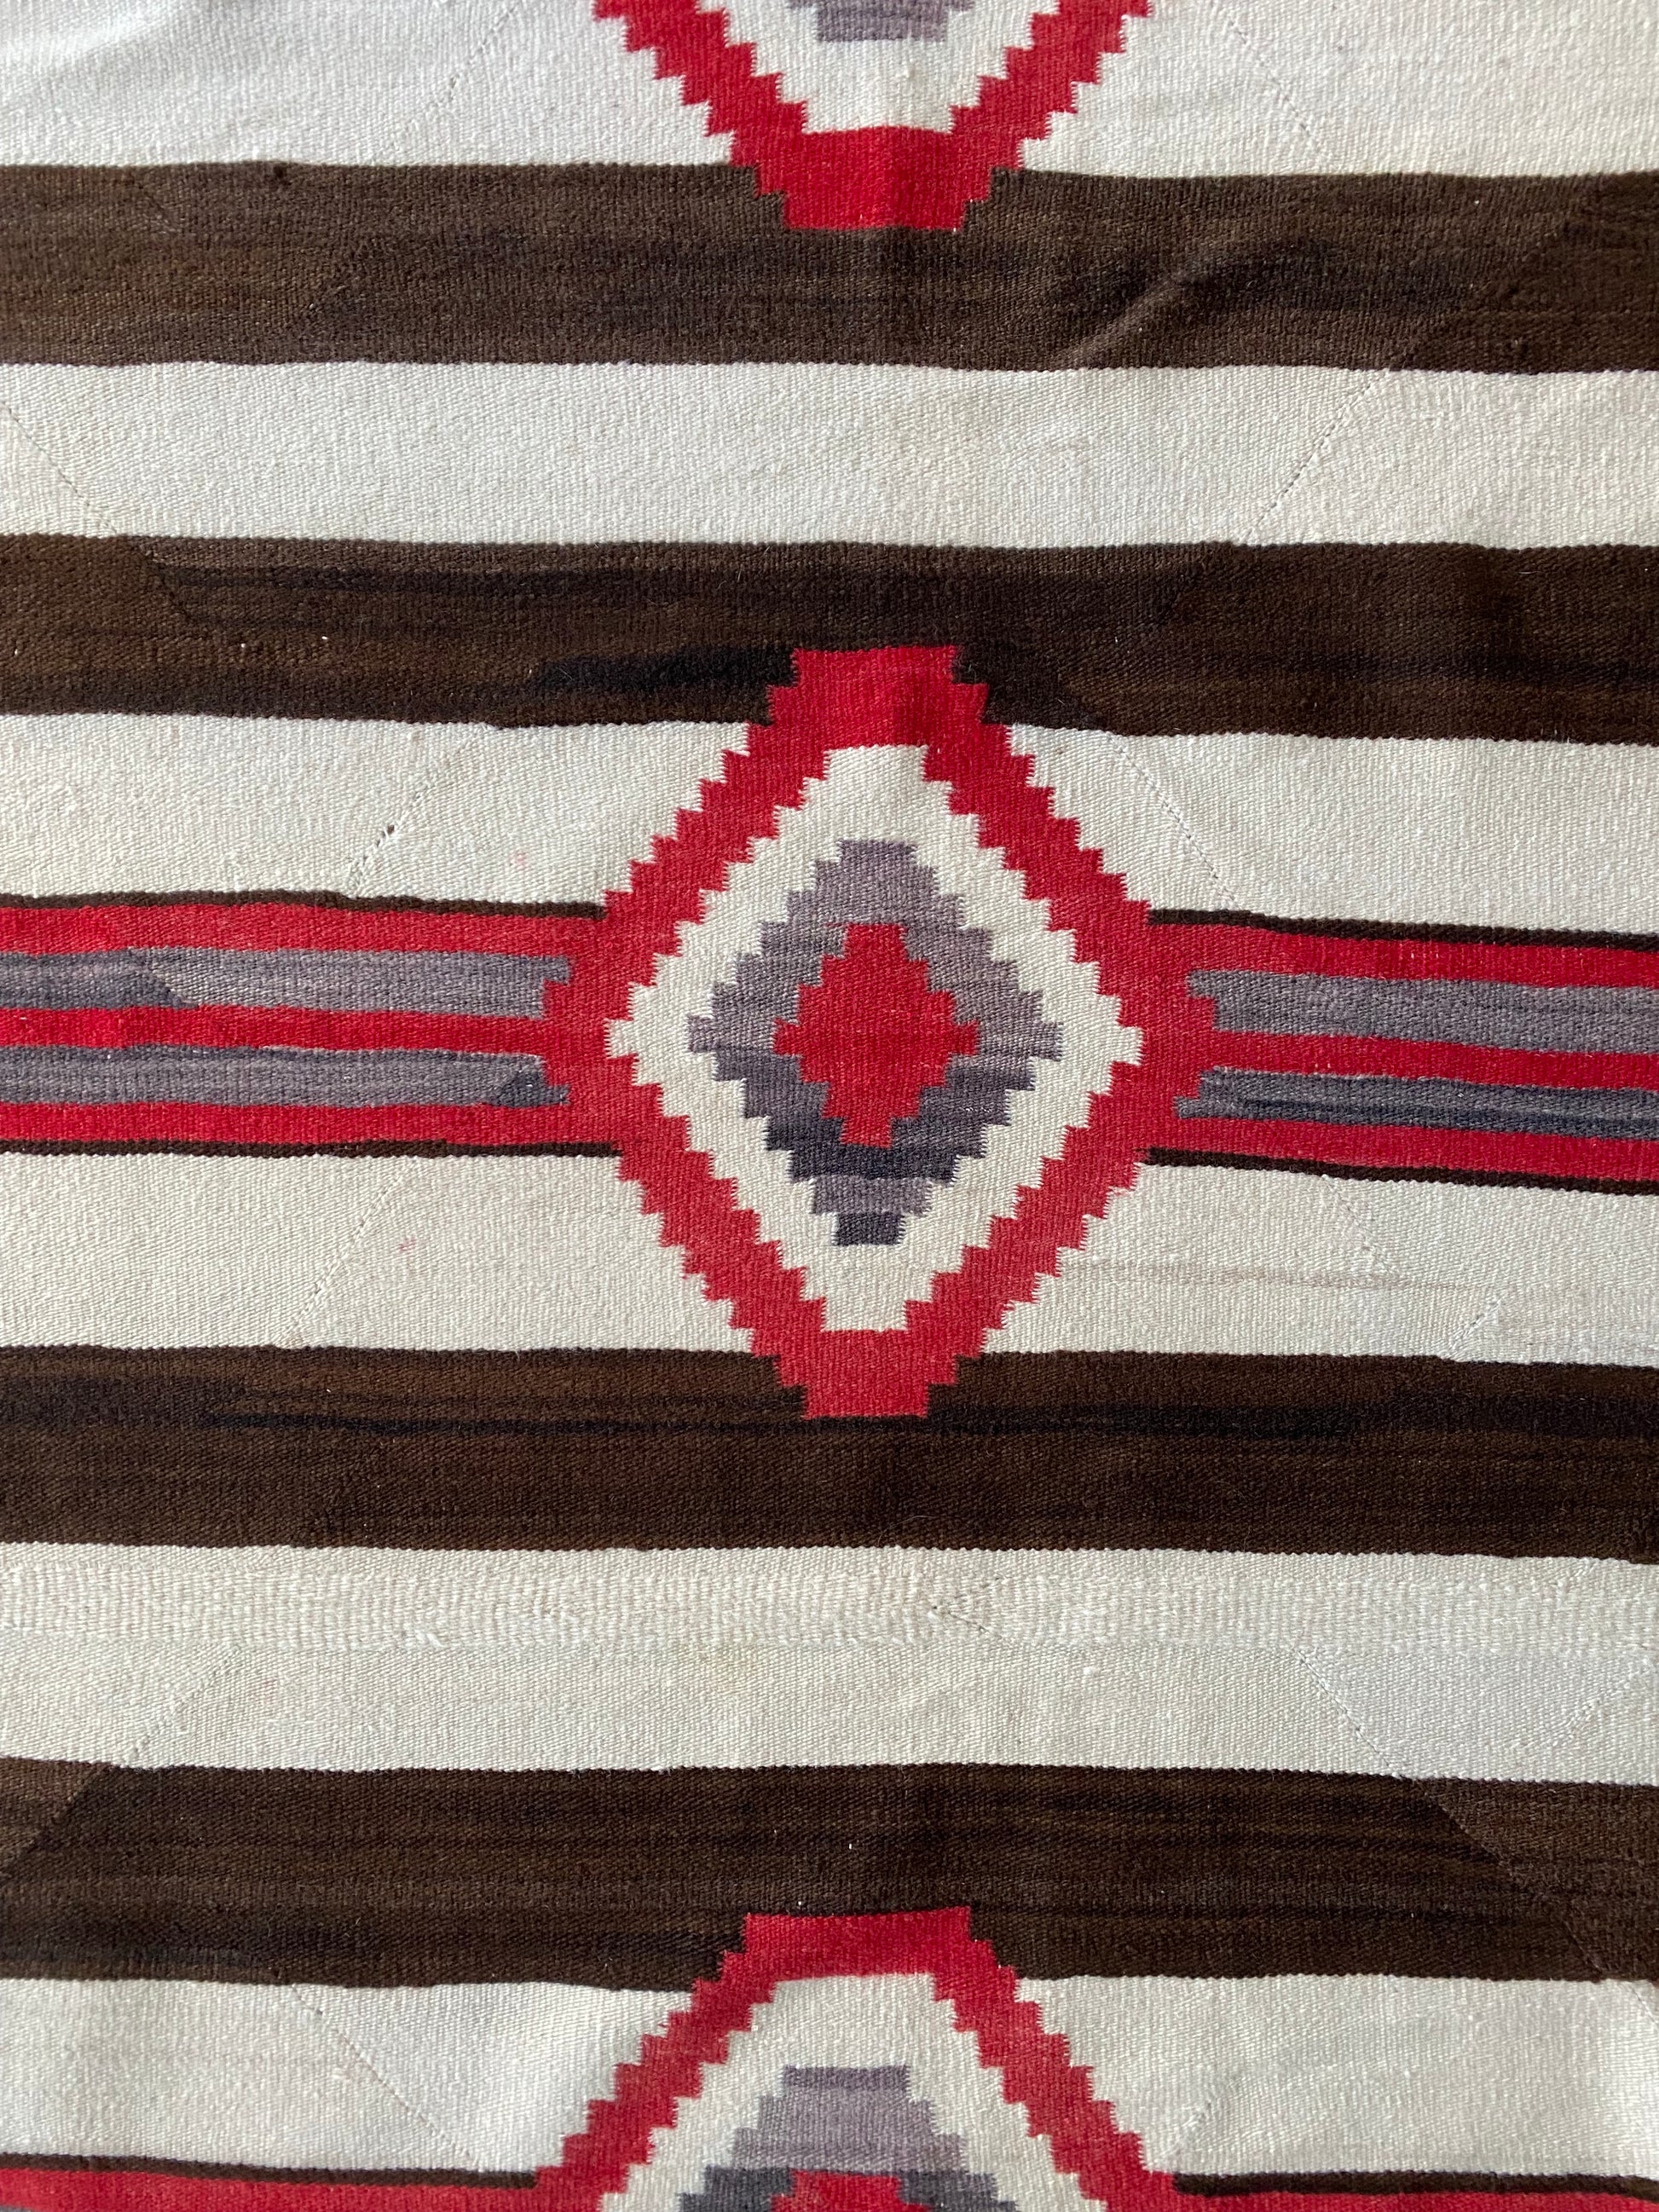 antique chiefs Navajo blanket, navajo weaving, navajo rug for sale, navajo textile, telluride